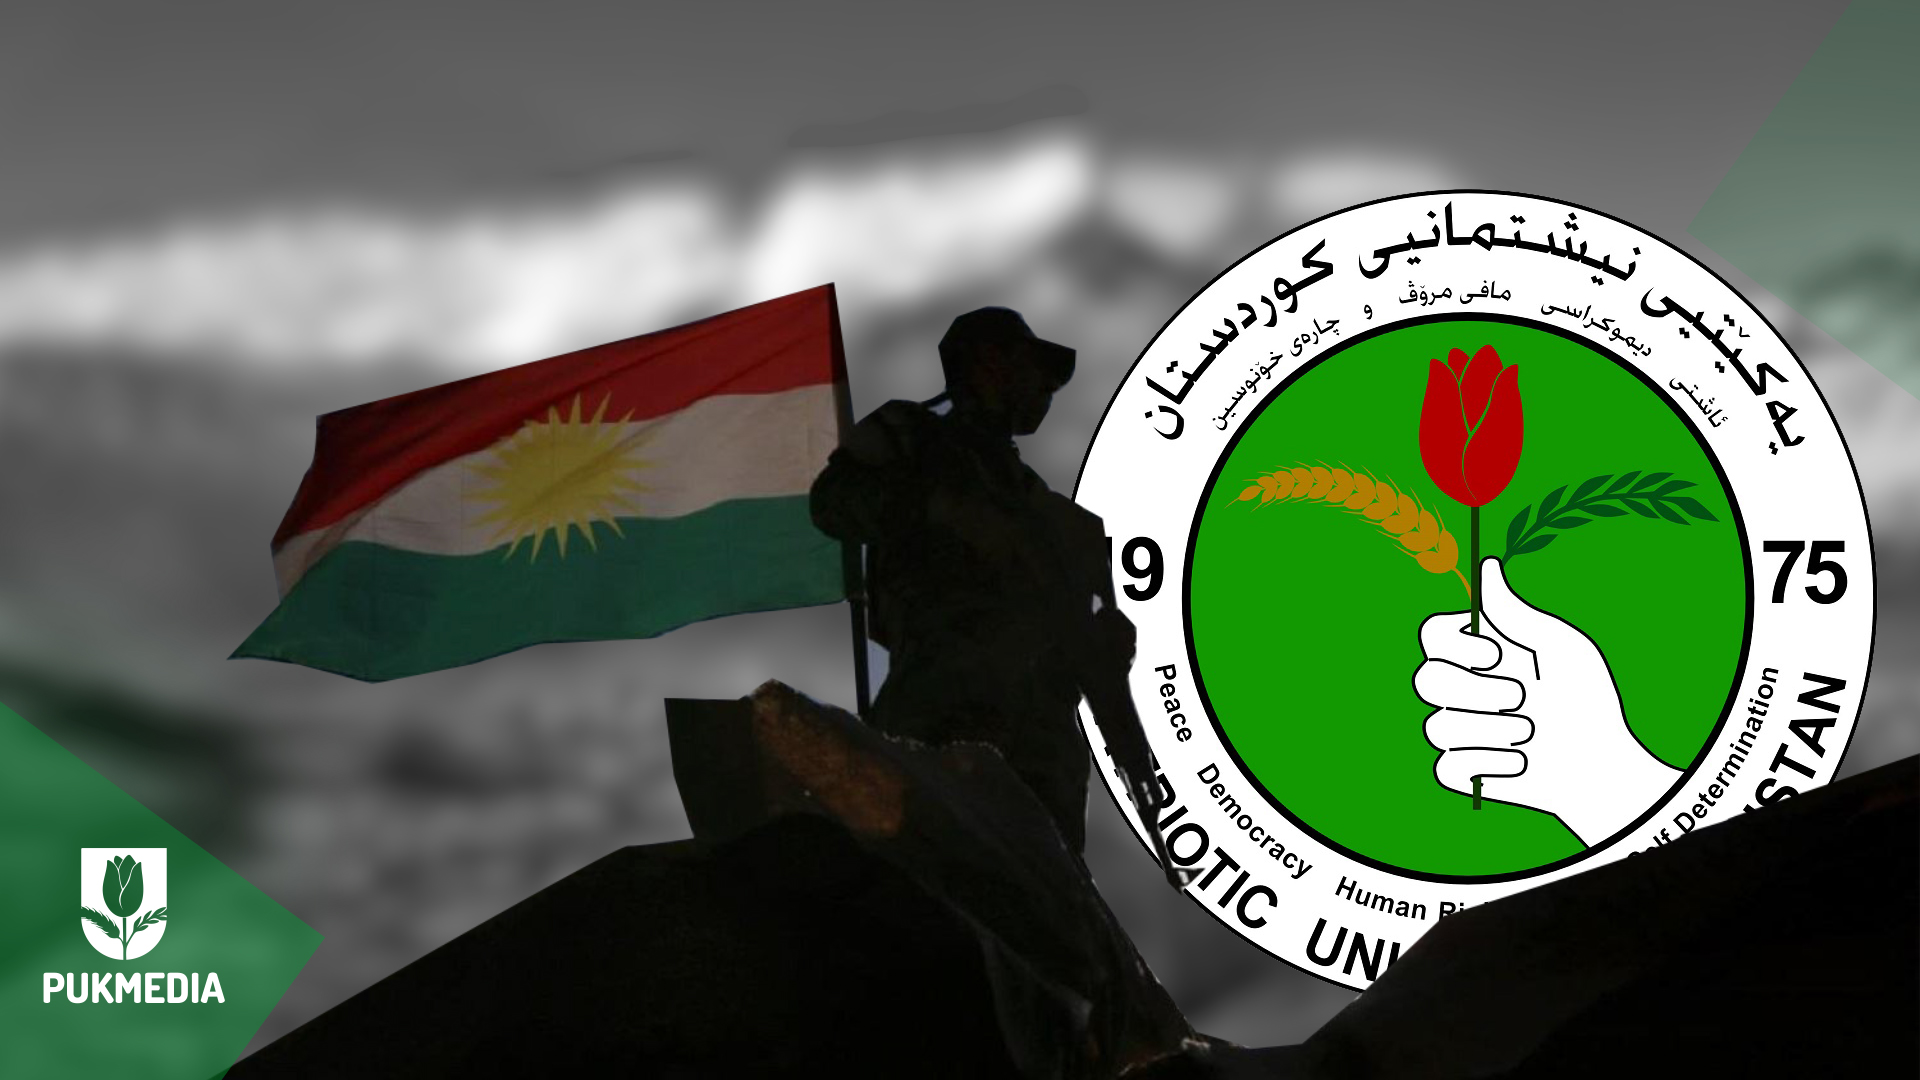 Pêşmergeyên Kurdistan 